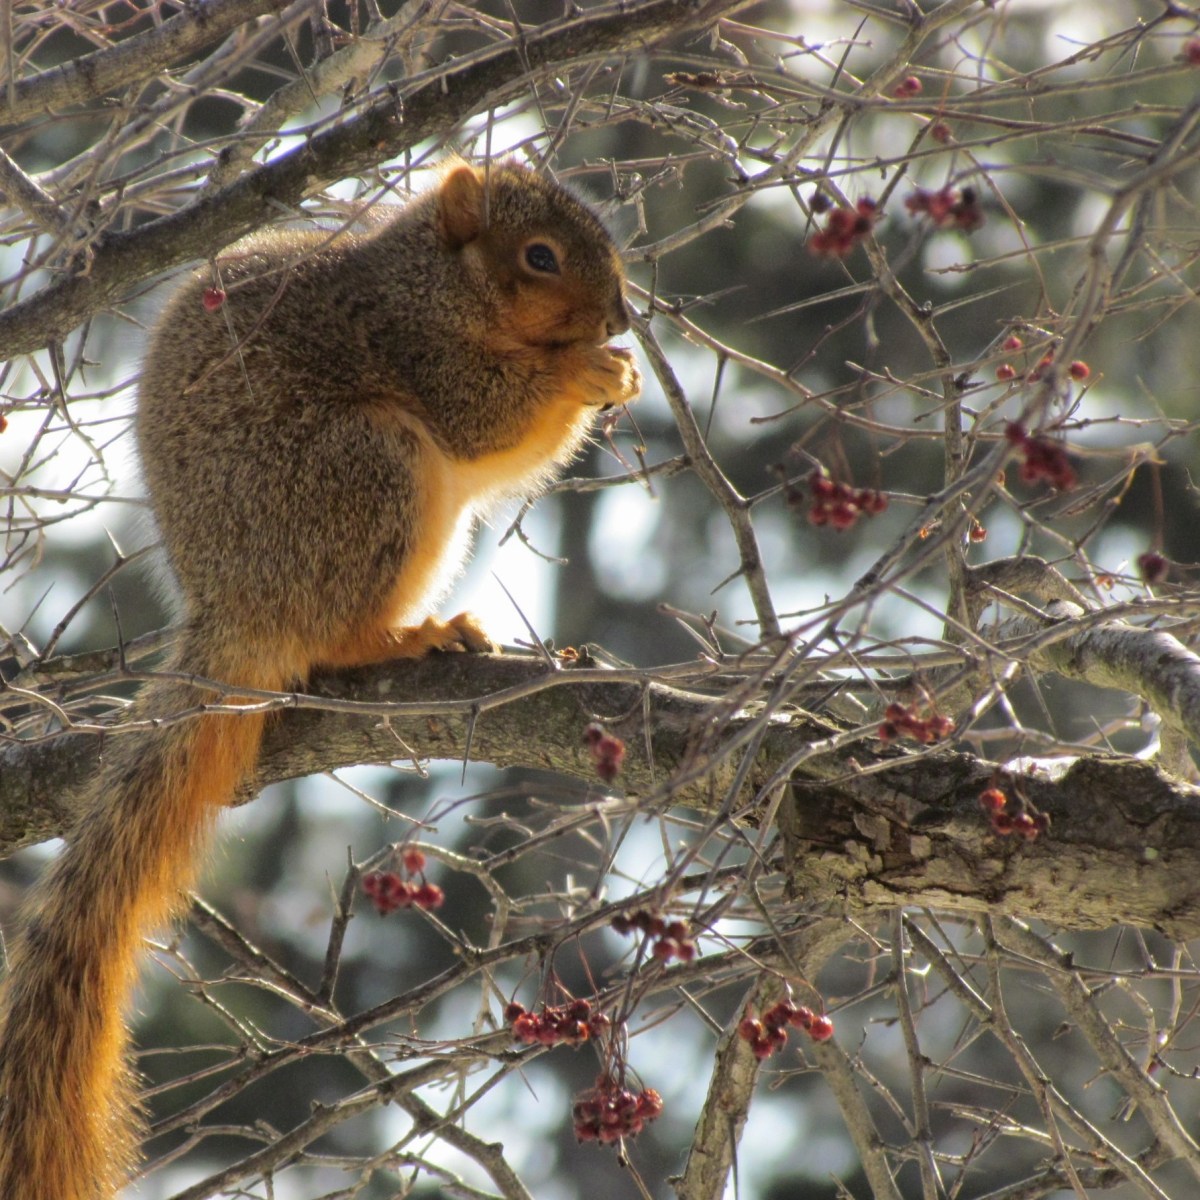 Fox Squirrel eating berries